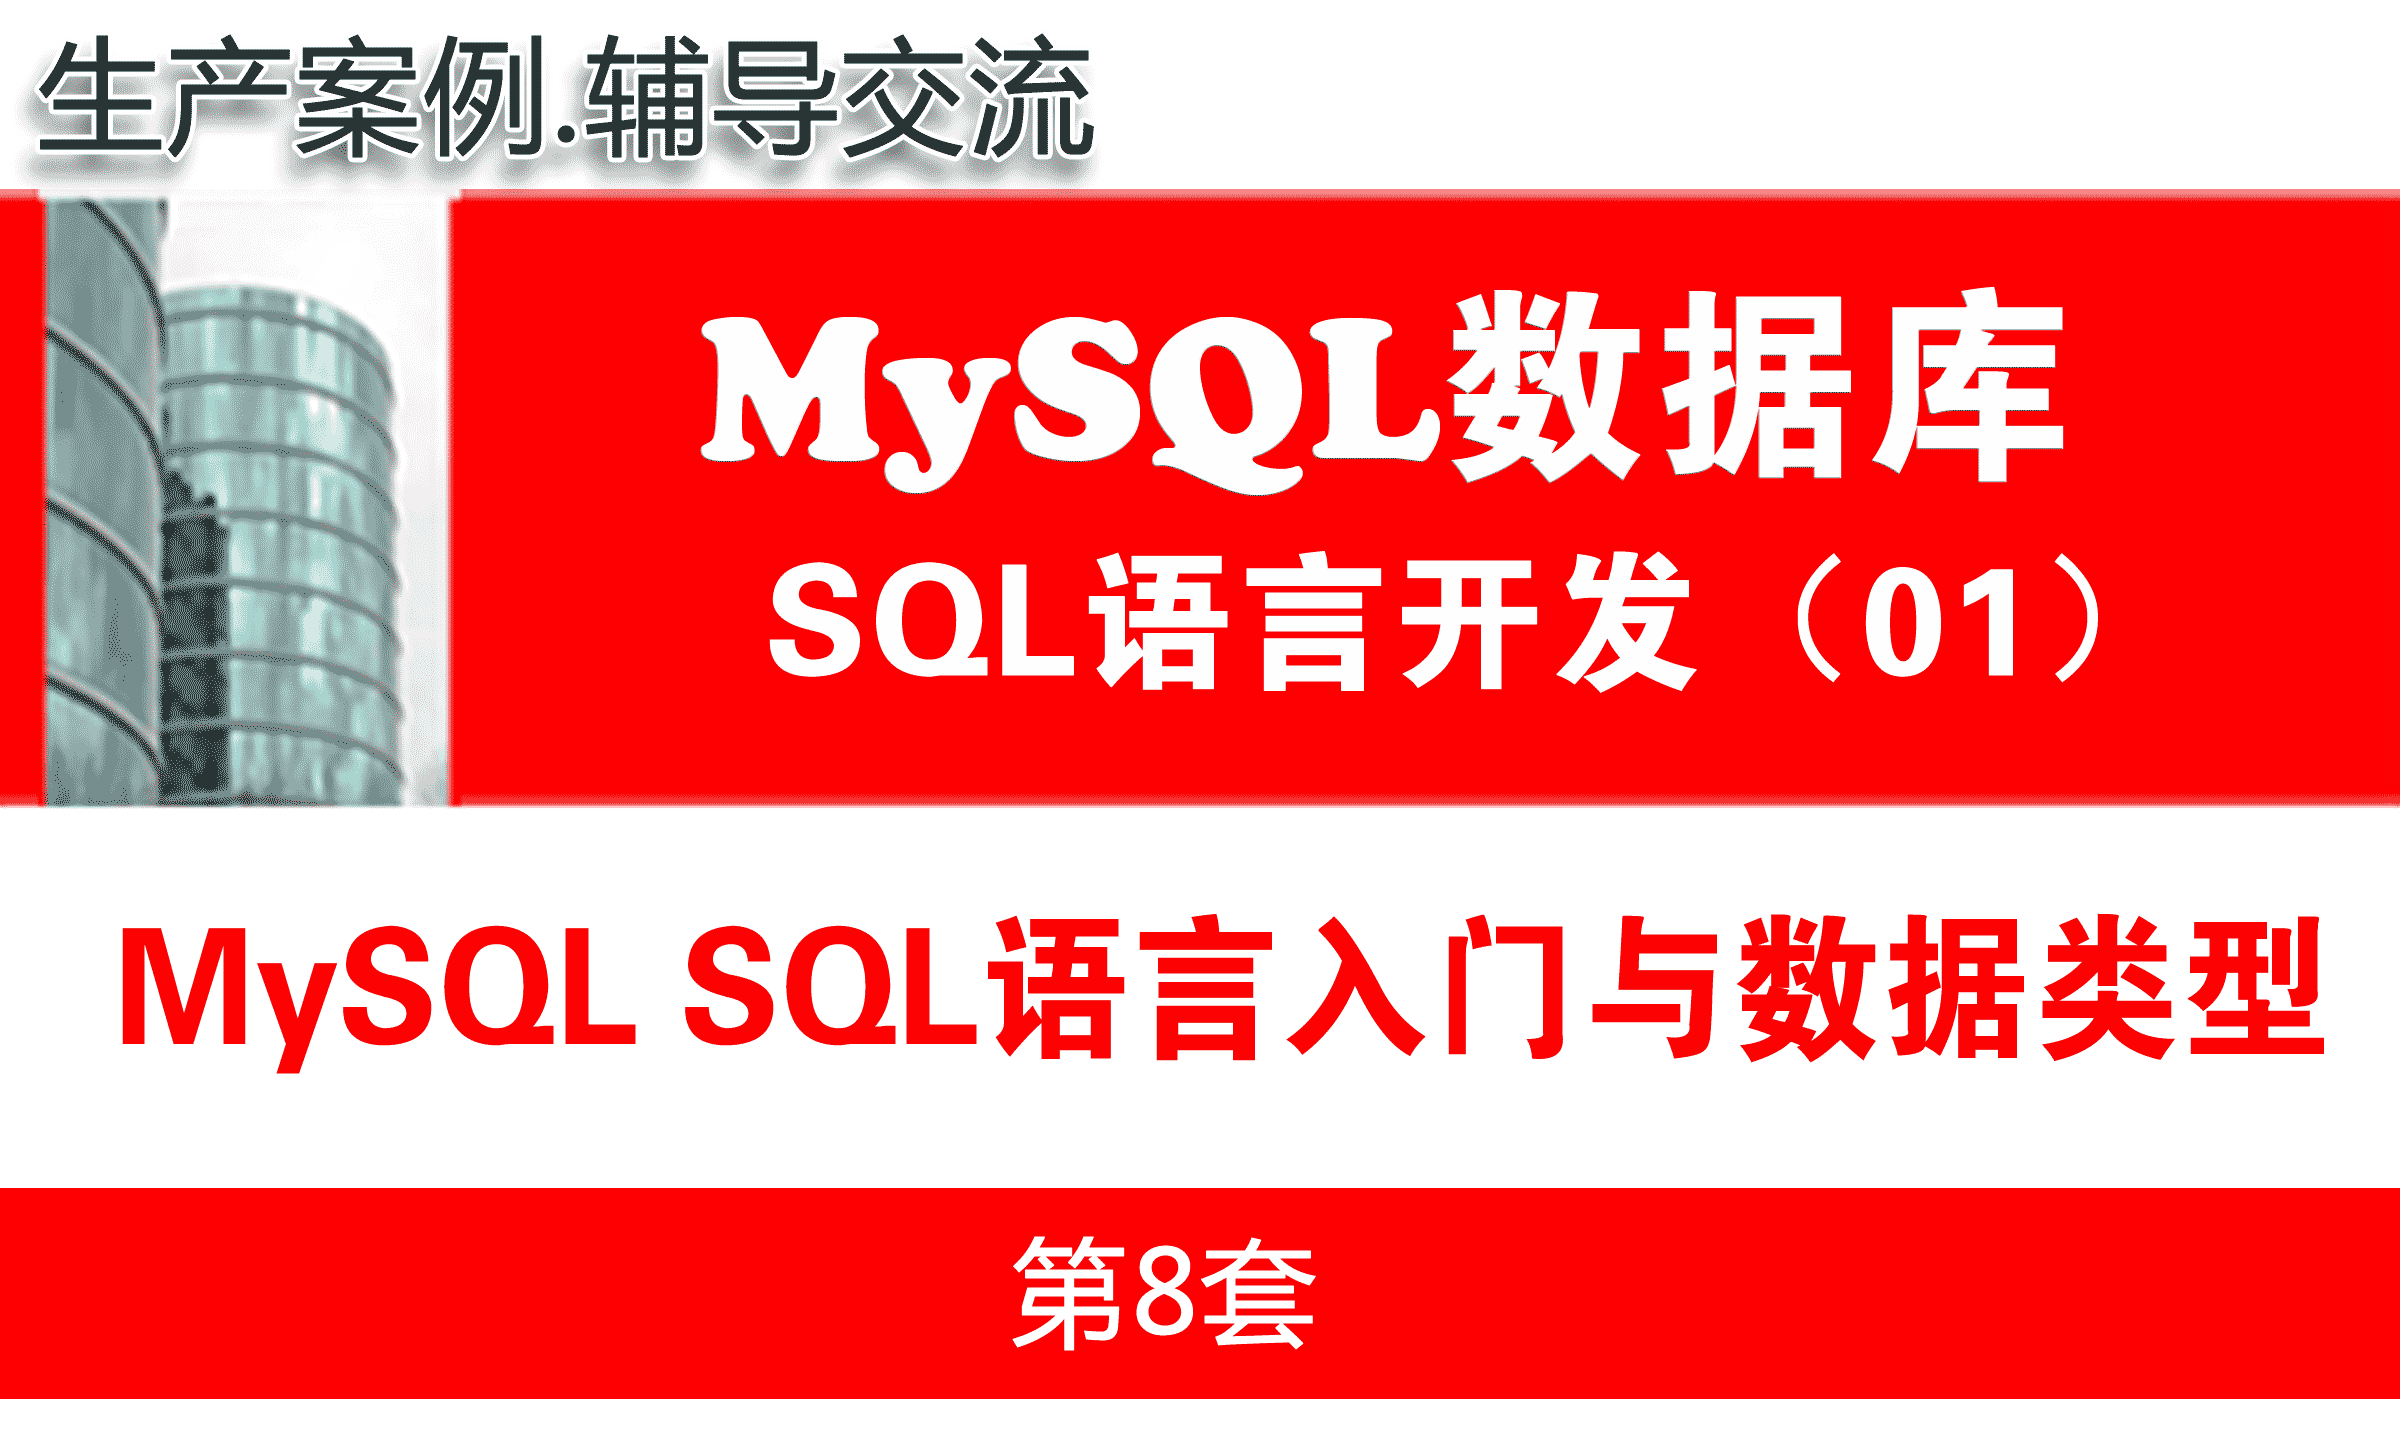 MySQL SQL语言基础入门与数据类型_MySQL数据库SQL语言开发与应用实战01